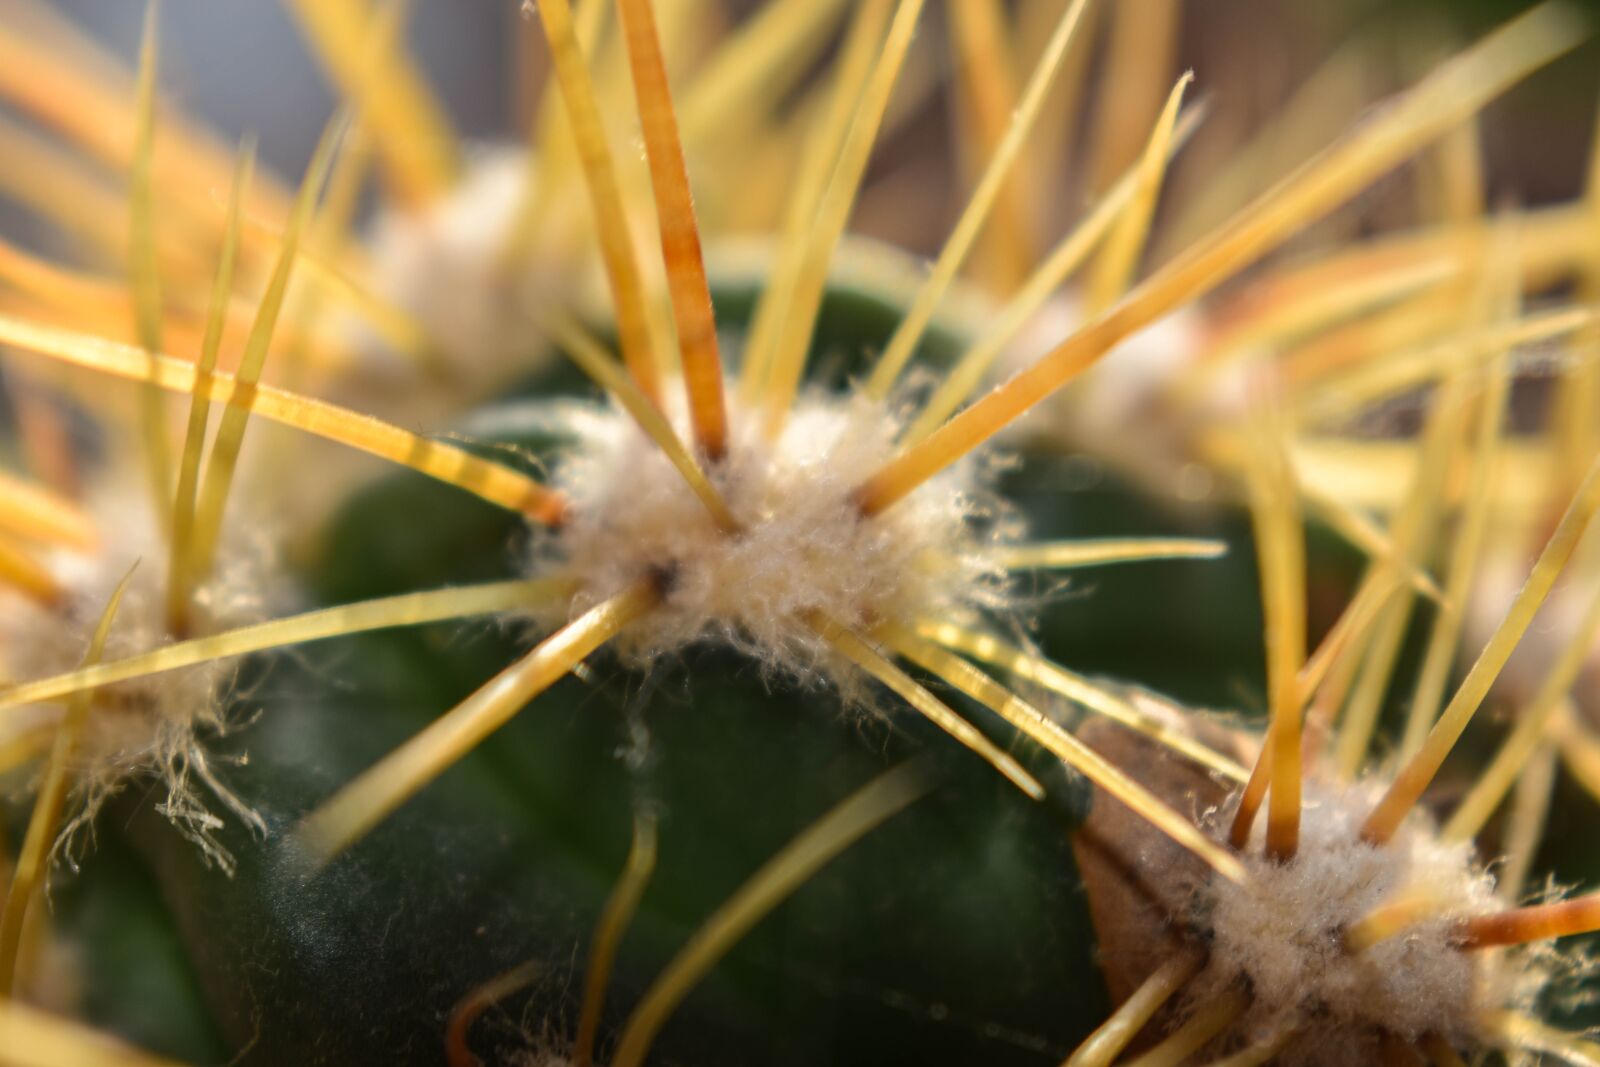 Nikon D3500 sample photo. Cactus, plant, closeup photography